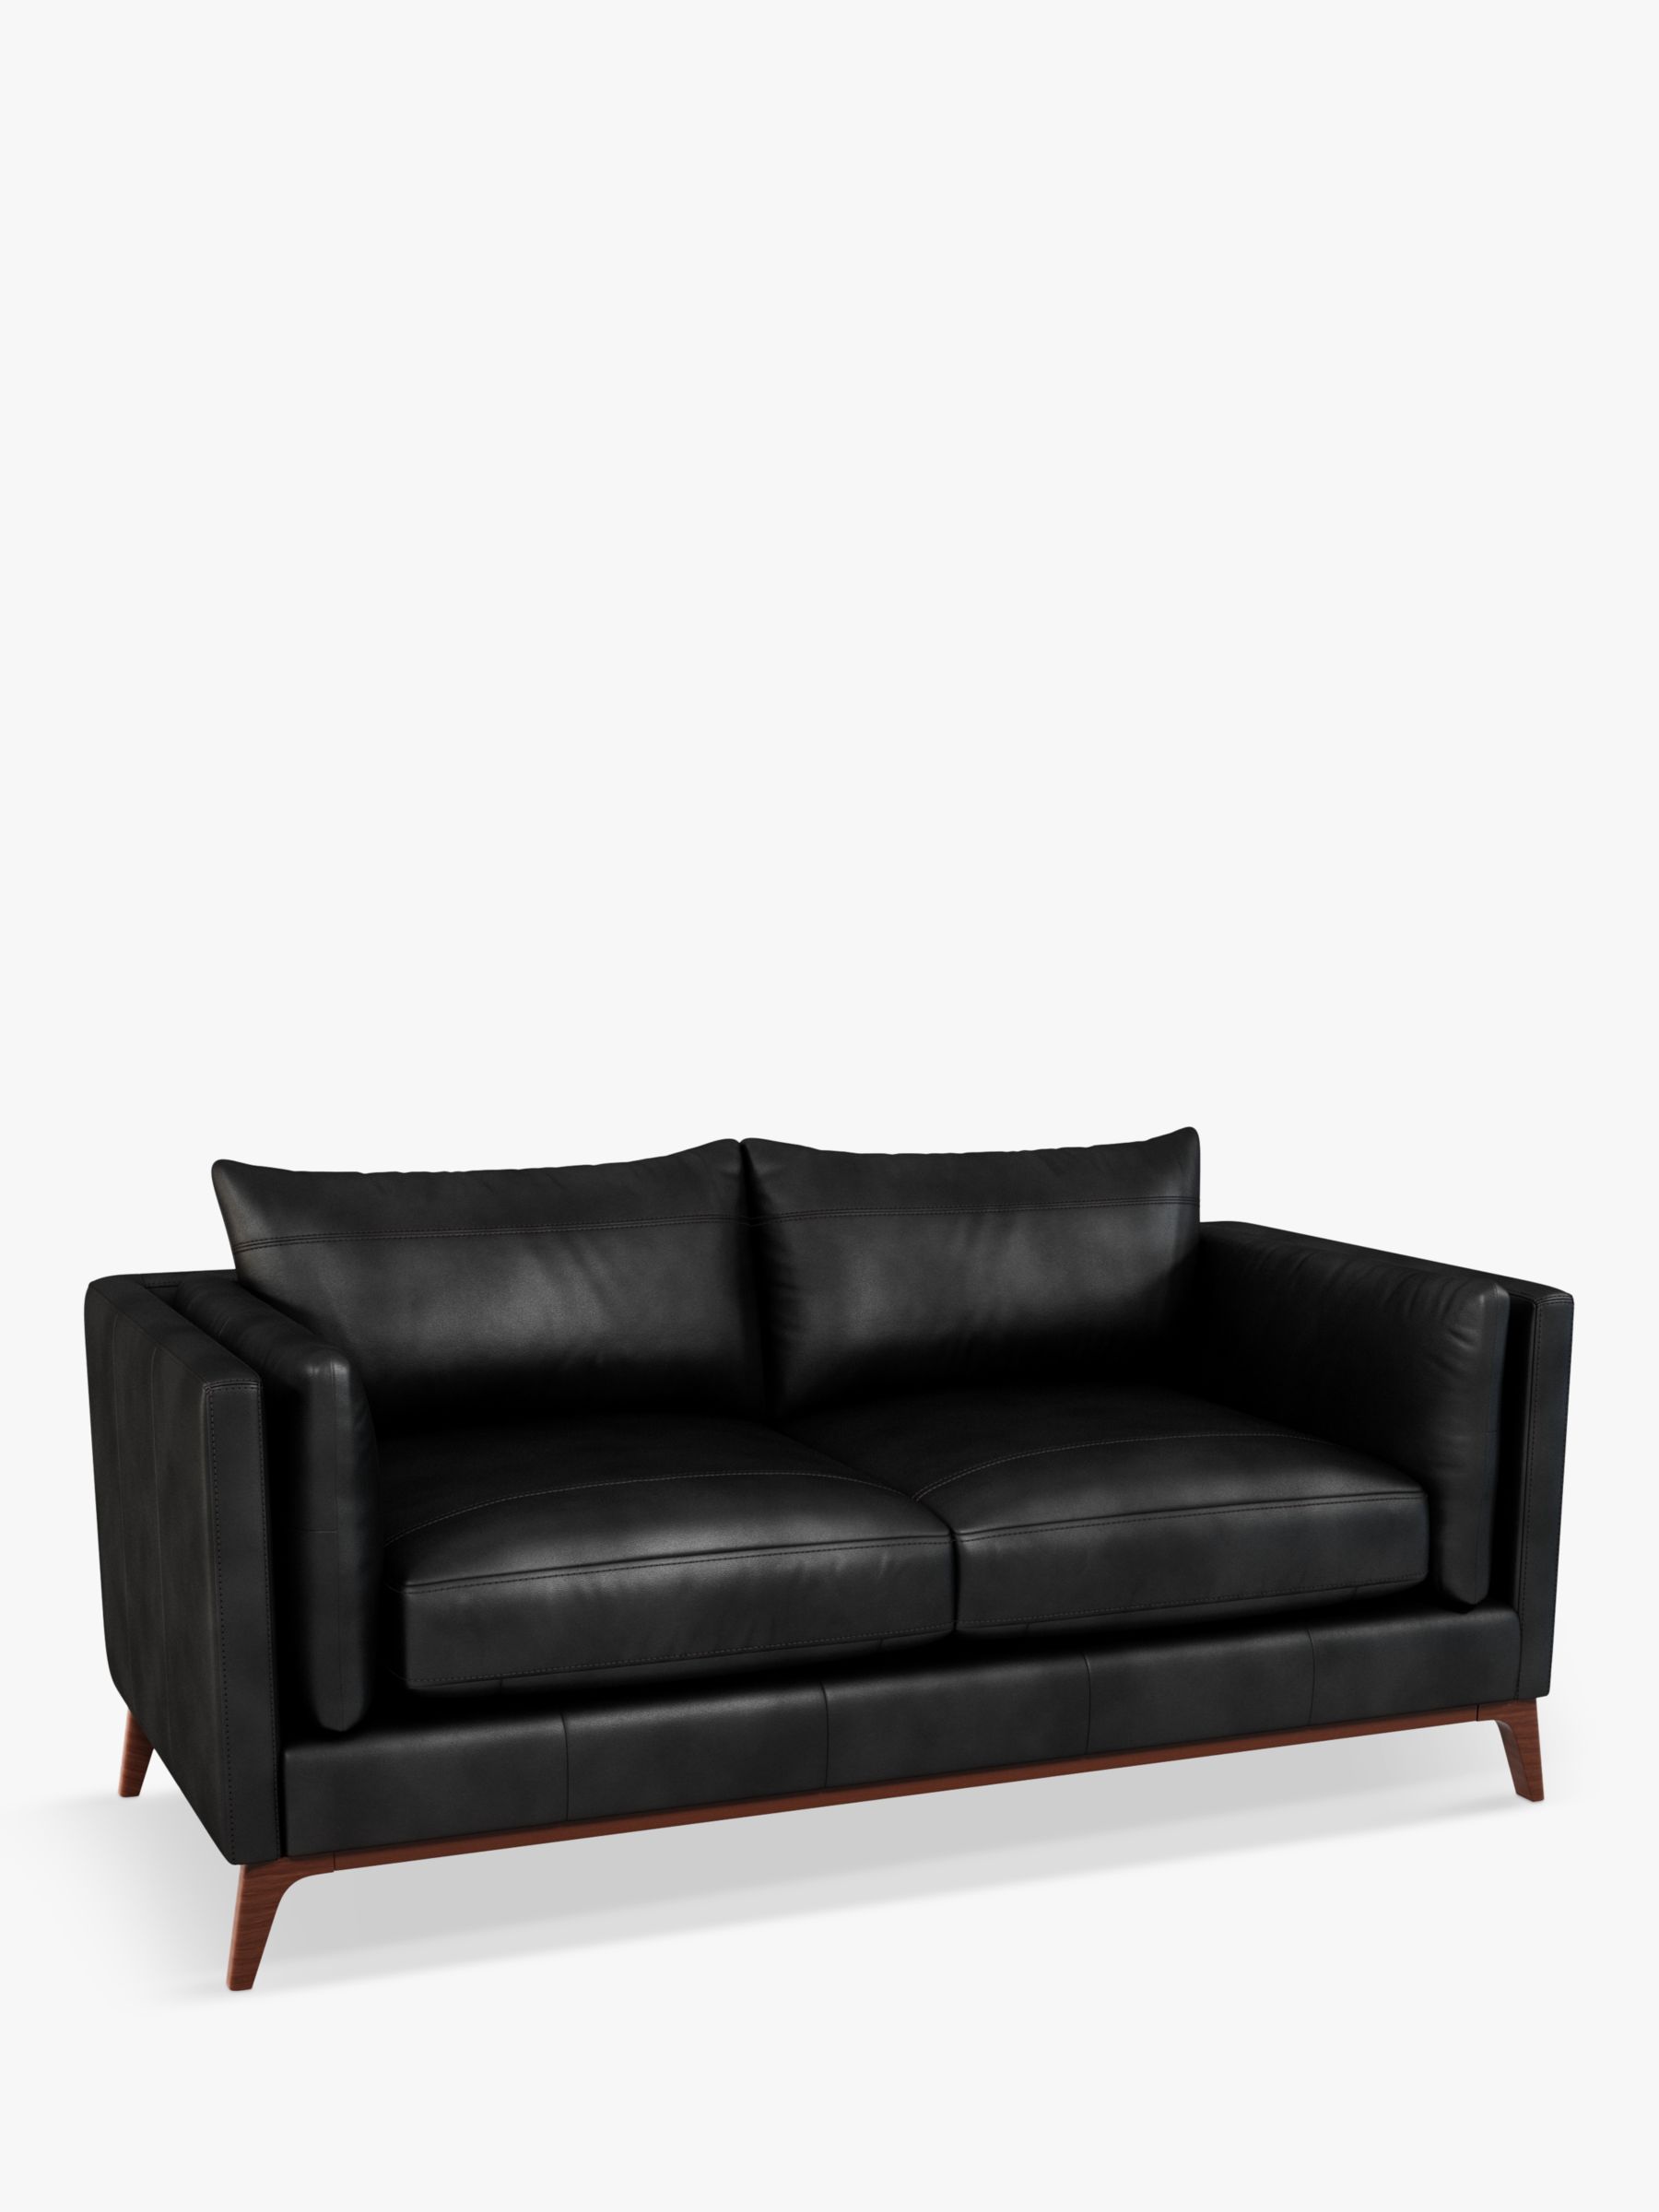 Trim Range, John Lewis Trim Medium 2 Seater Leather Sofa, Dark Leg, Contempo Black